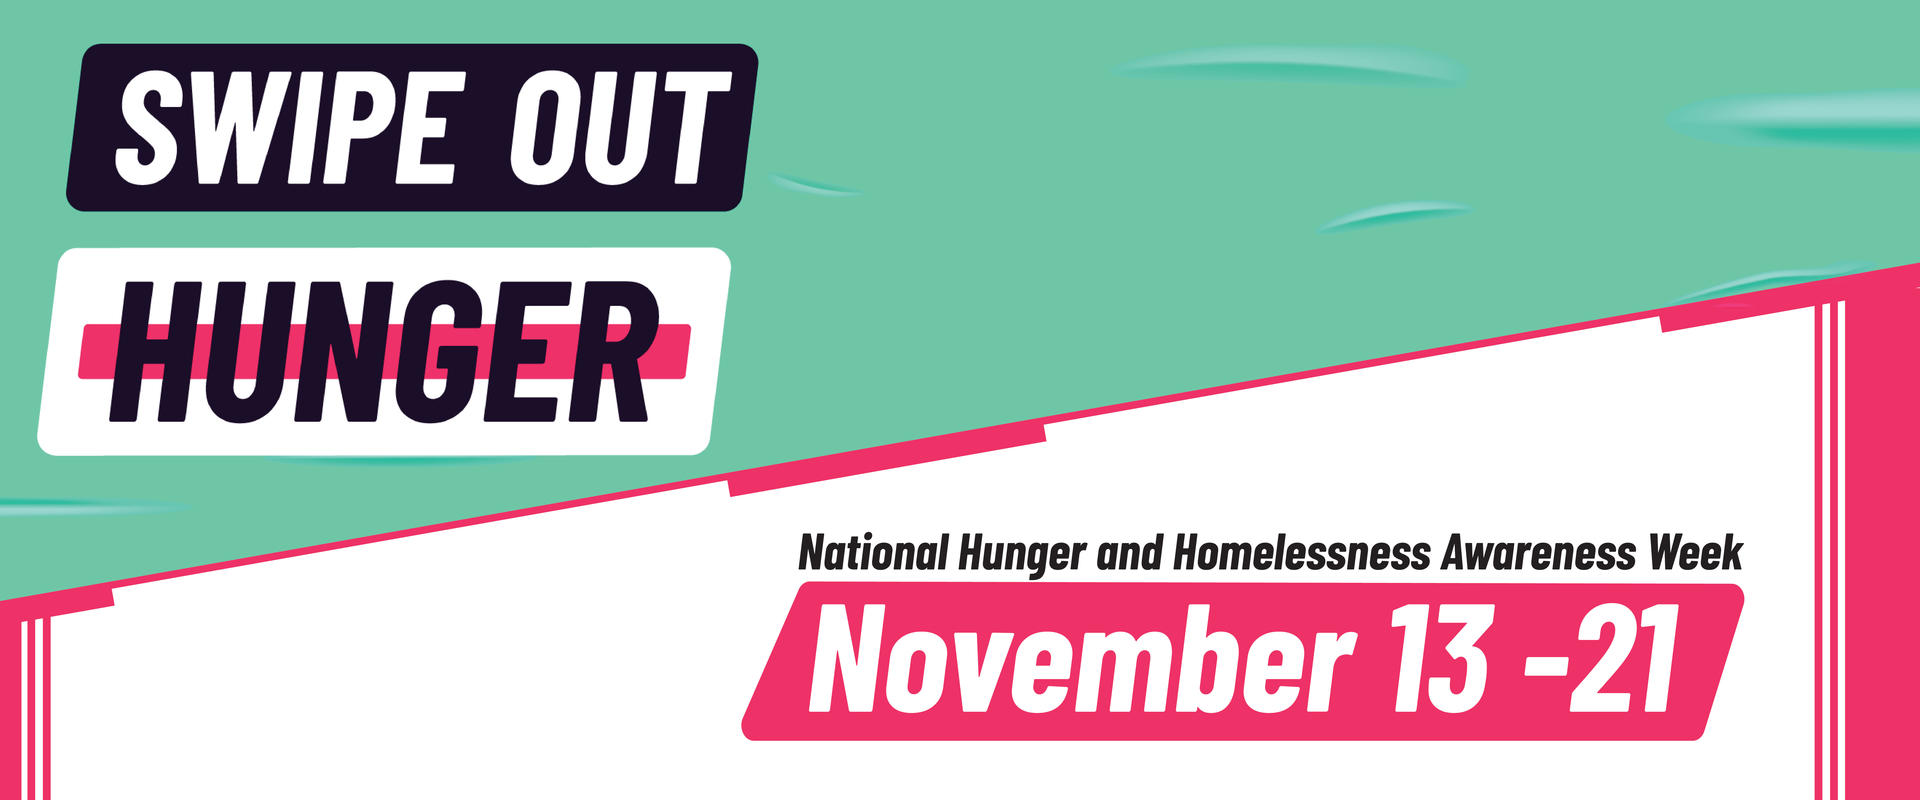 Swipe Out Hunger November 13-21